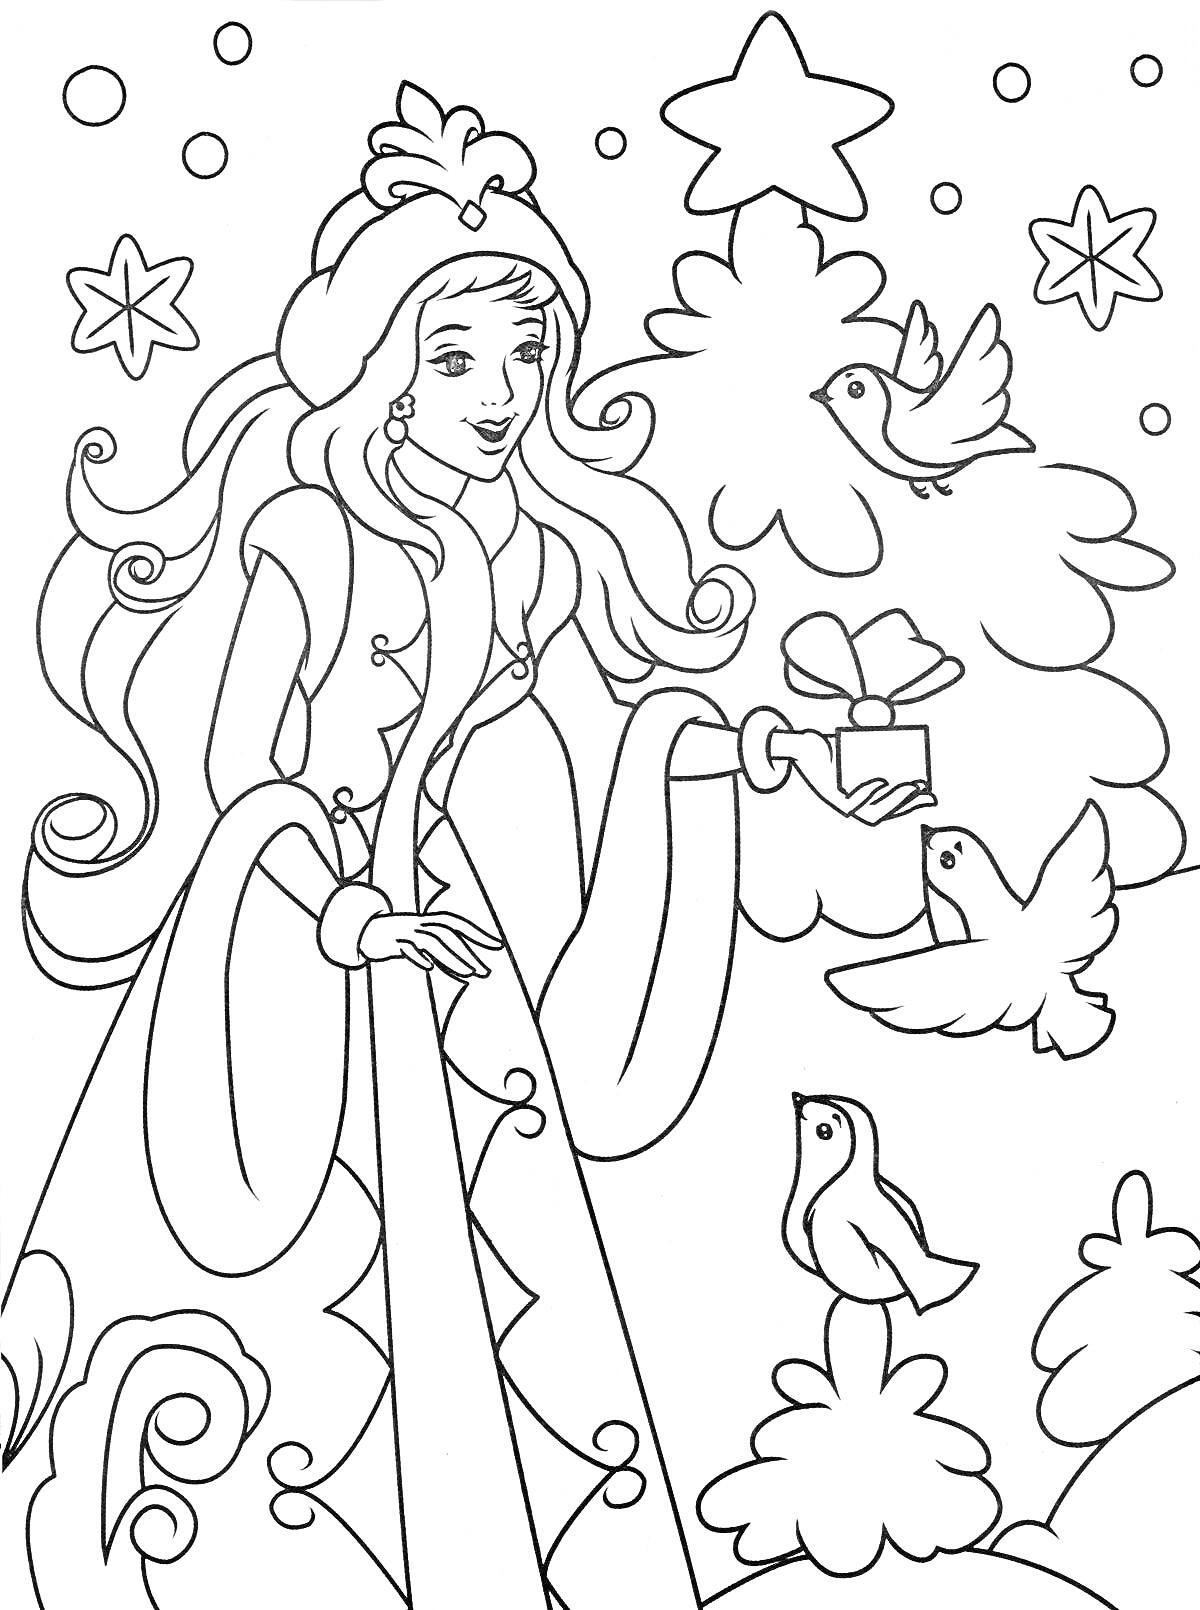 Раскраска Девушка в зимней одежде с подарком и птицами на фоне снежных деревьев и звезд